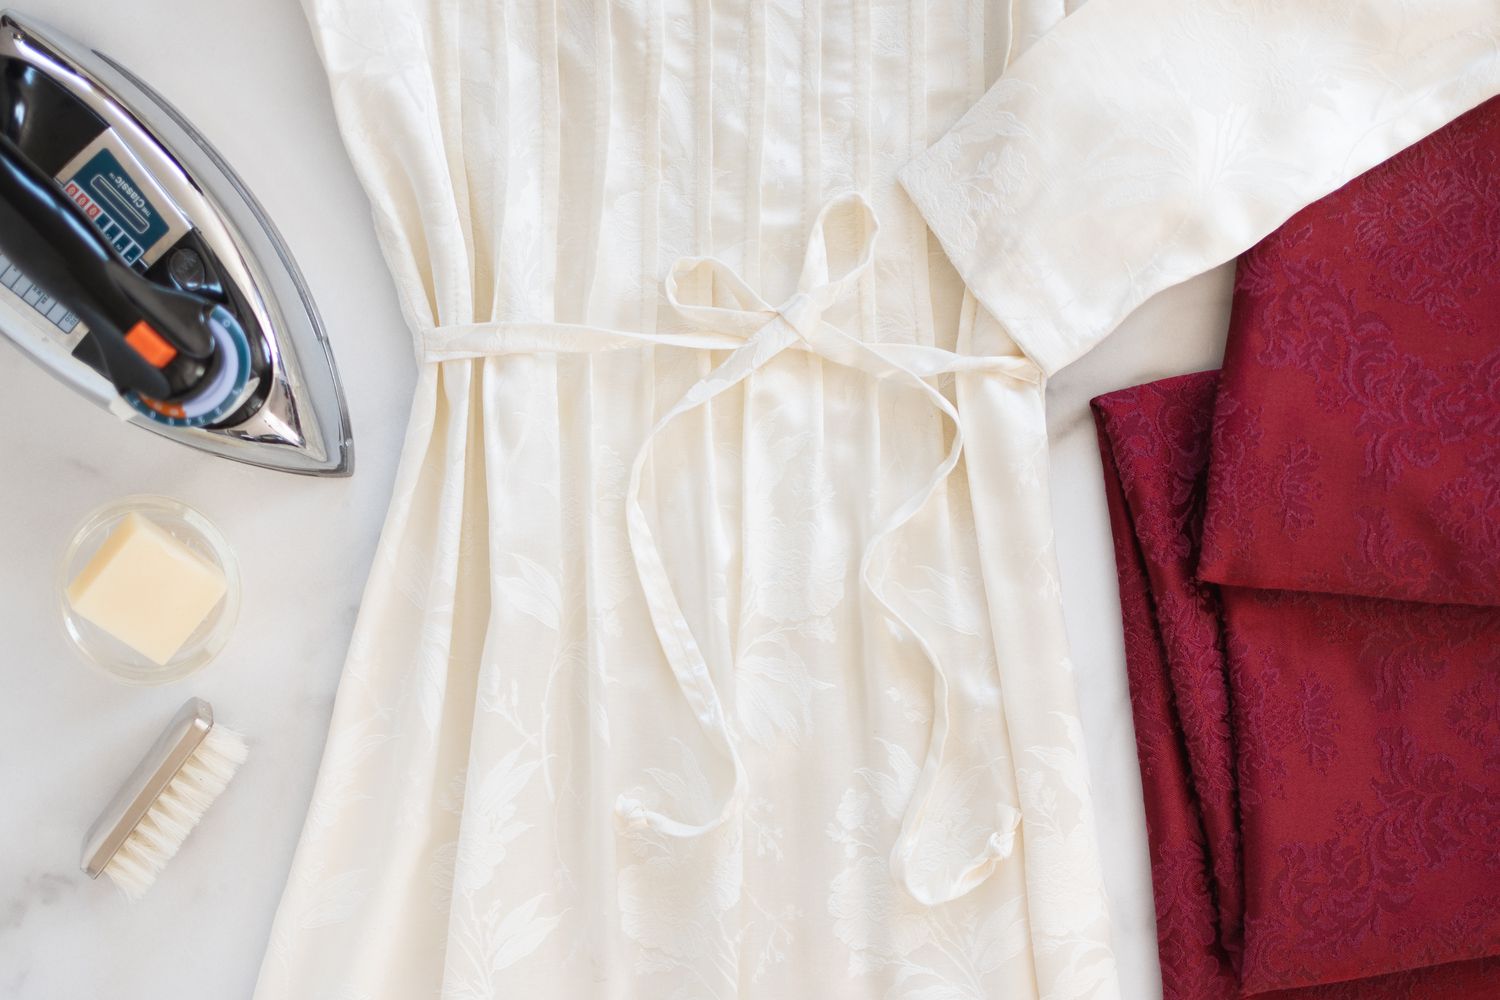 Weißes Damastkleid neben rotem Damast, gefalteter Stoff neben Bügeleisen und Reinigungsmaterial